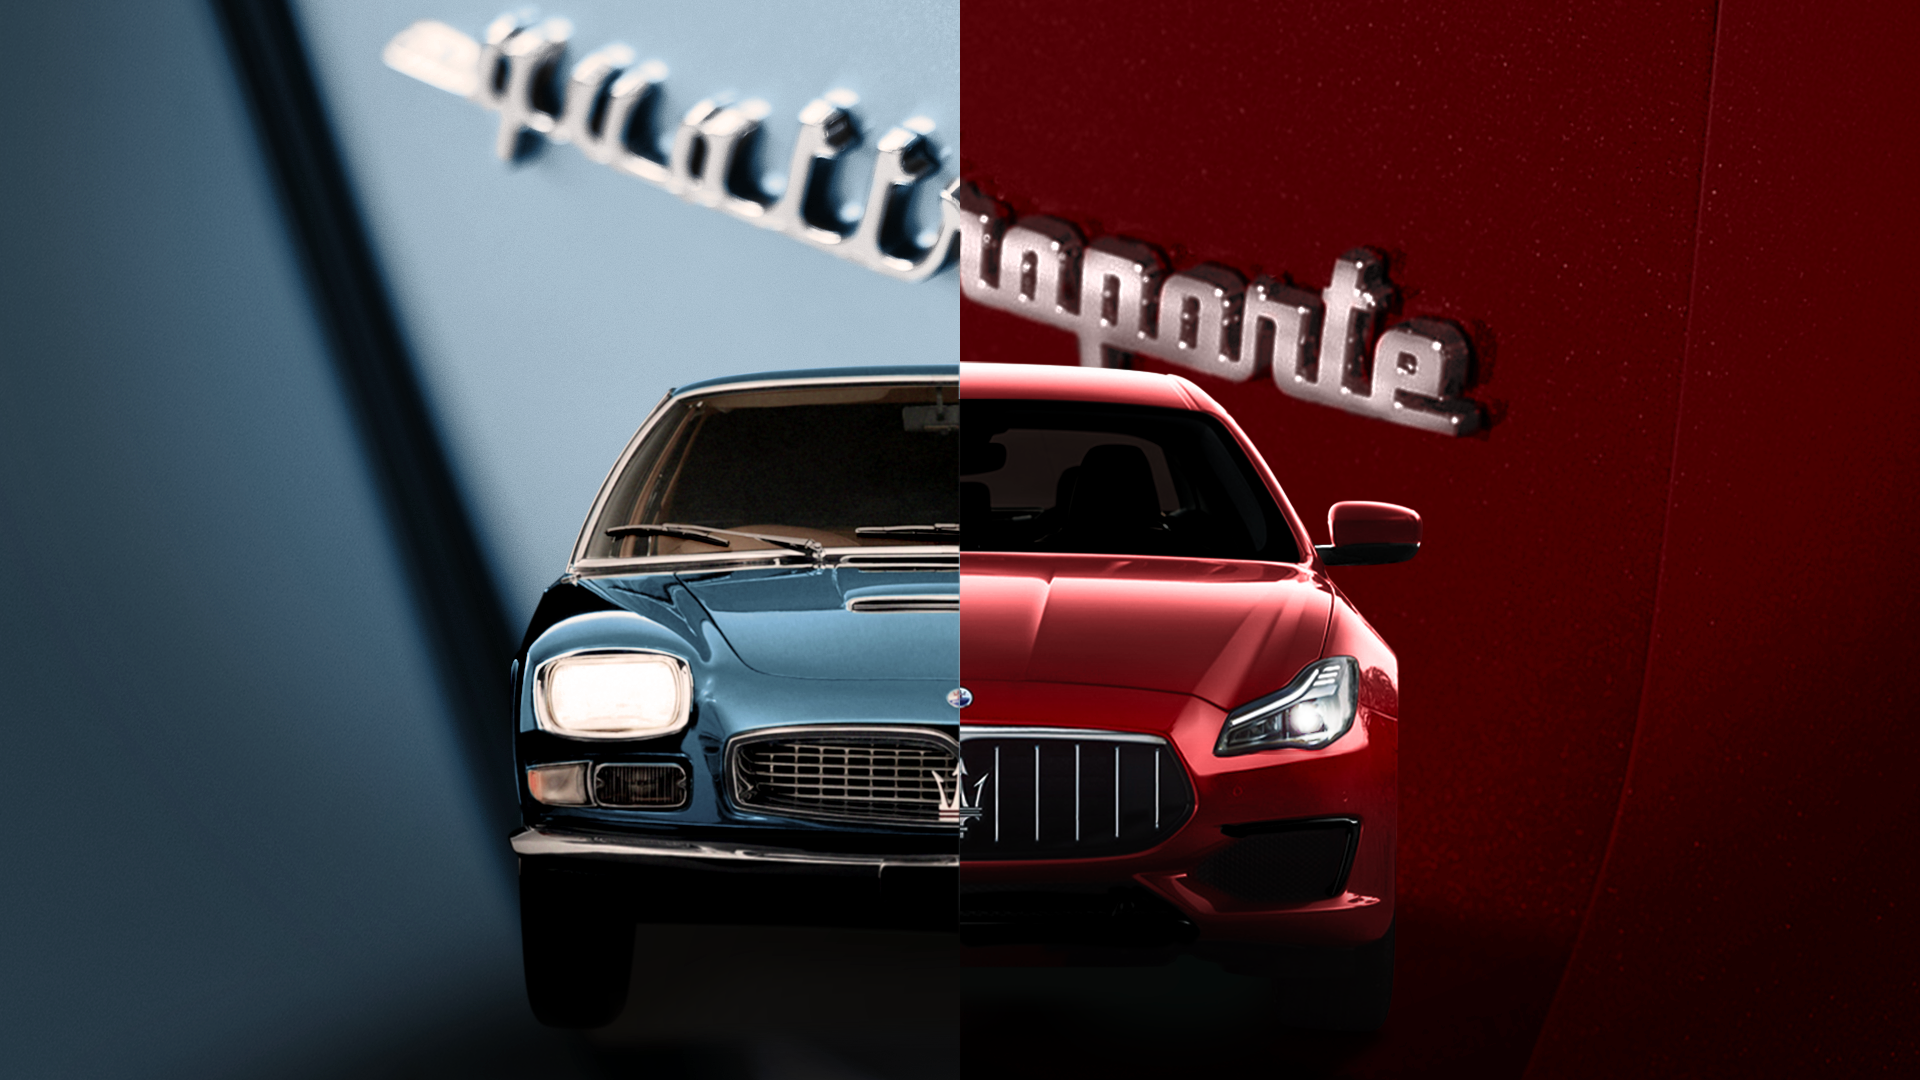 義式優雅 經典永恆 Maserati Quattroporte 豪華轎跑迎接 60 週年